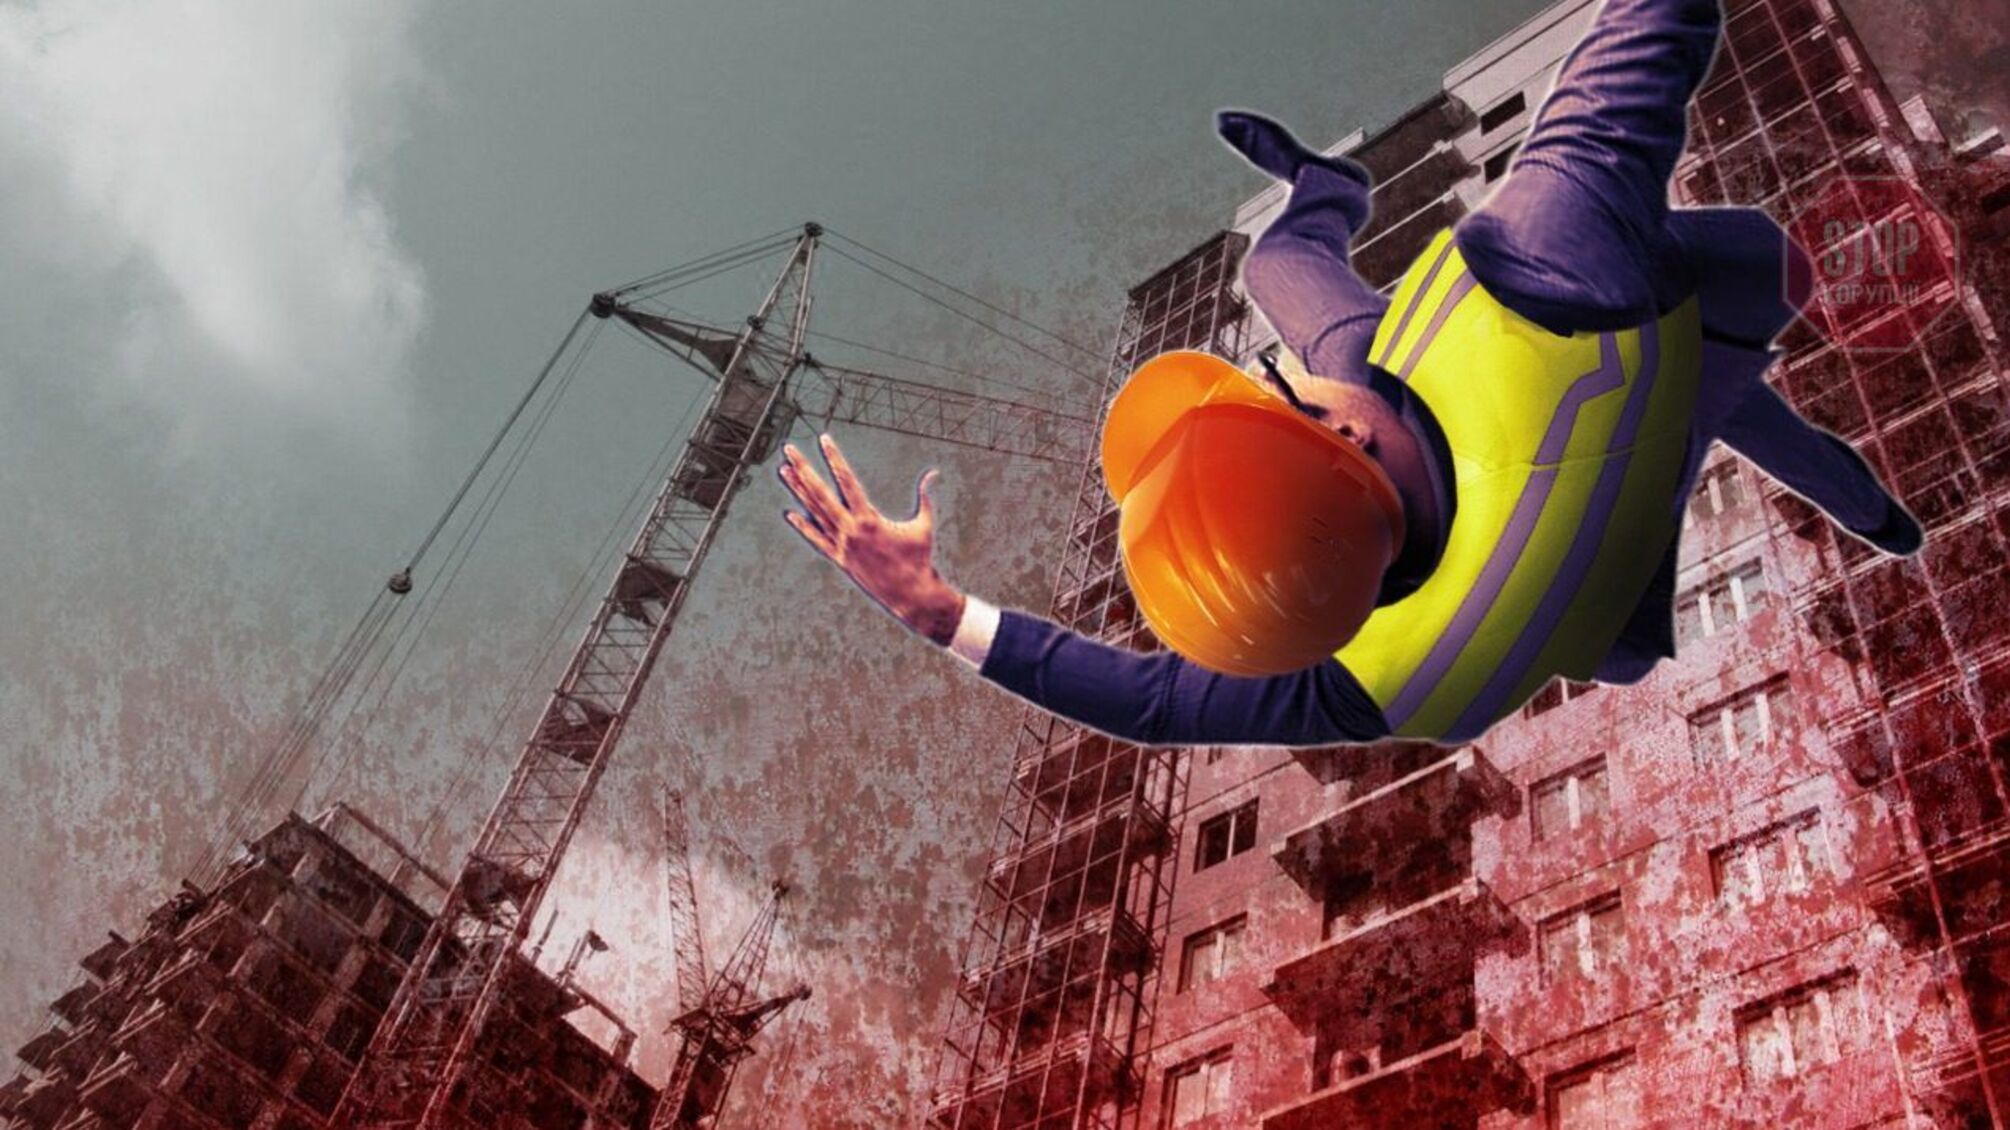 Опасное строительство: в Херсоне рабочий выпал с высотки, а инвесторы заявили об аферах заказчиков